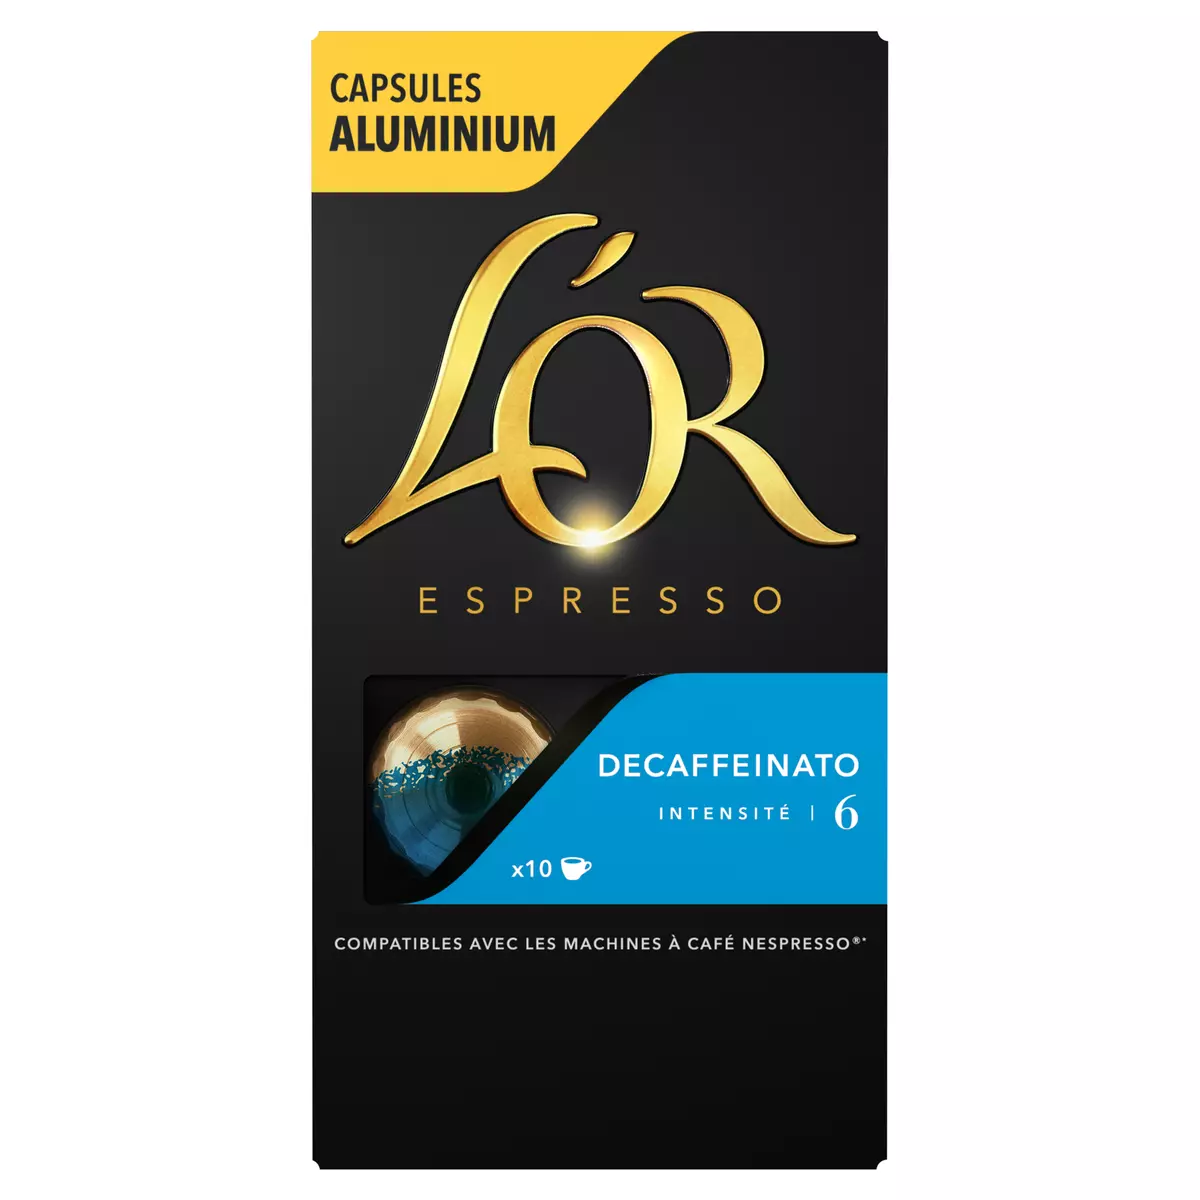 L'OR ESPRESSO Capsules de café decaffeinato intensité 6 compatibles Nespresso 10 capsules 52g